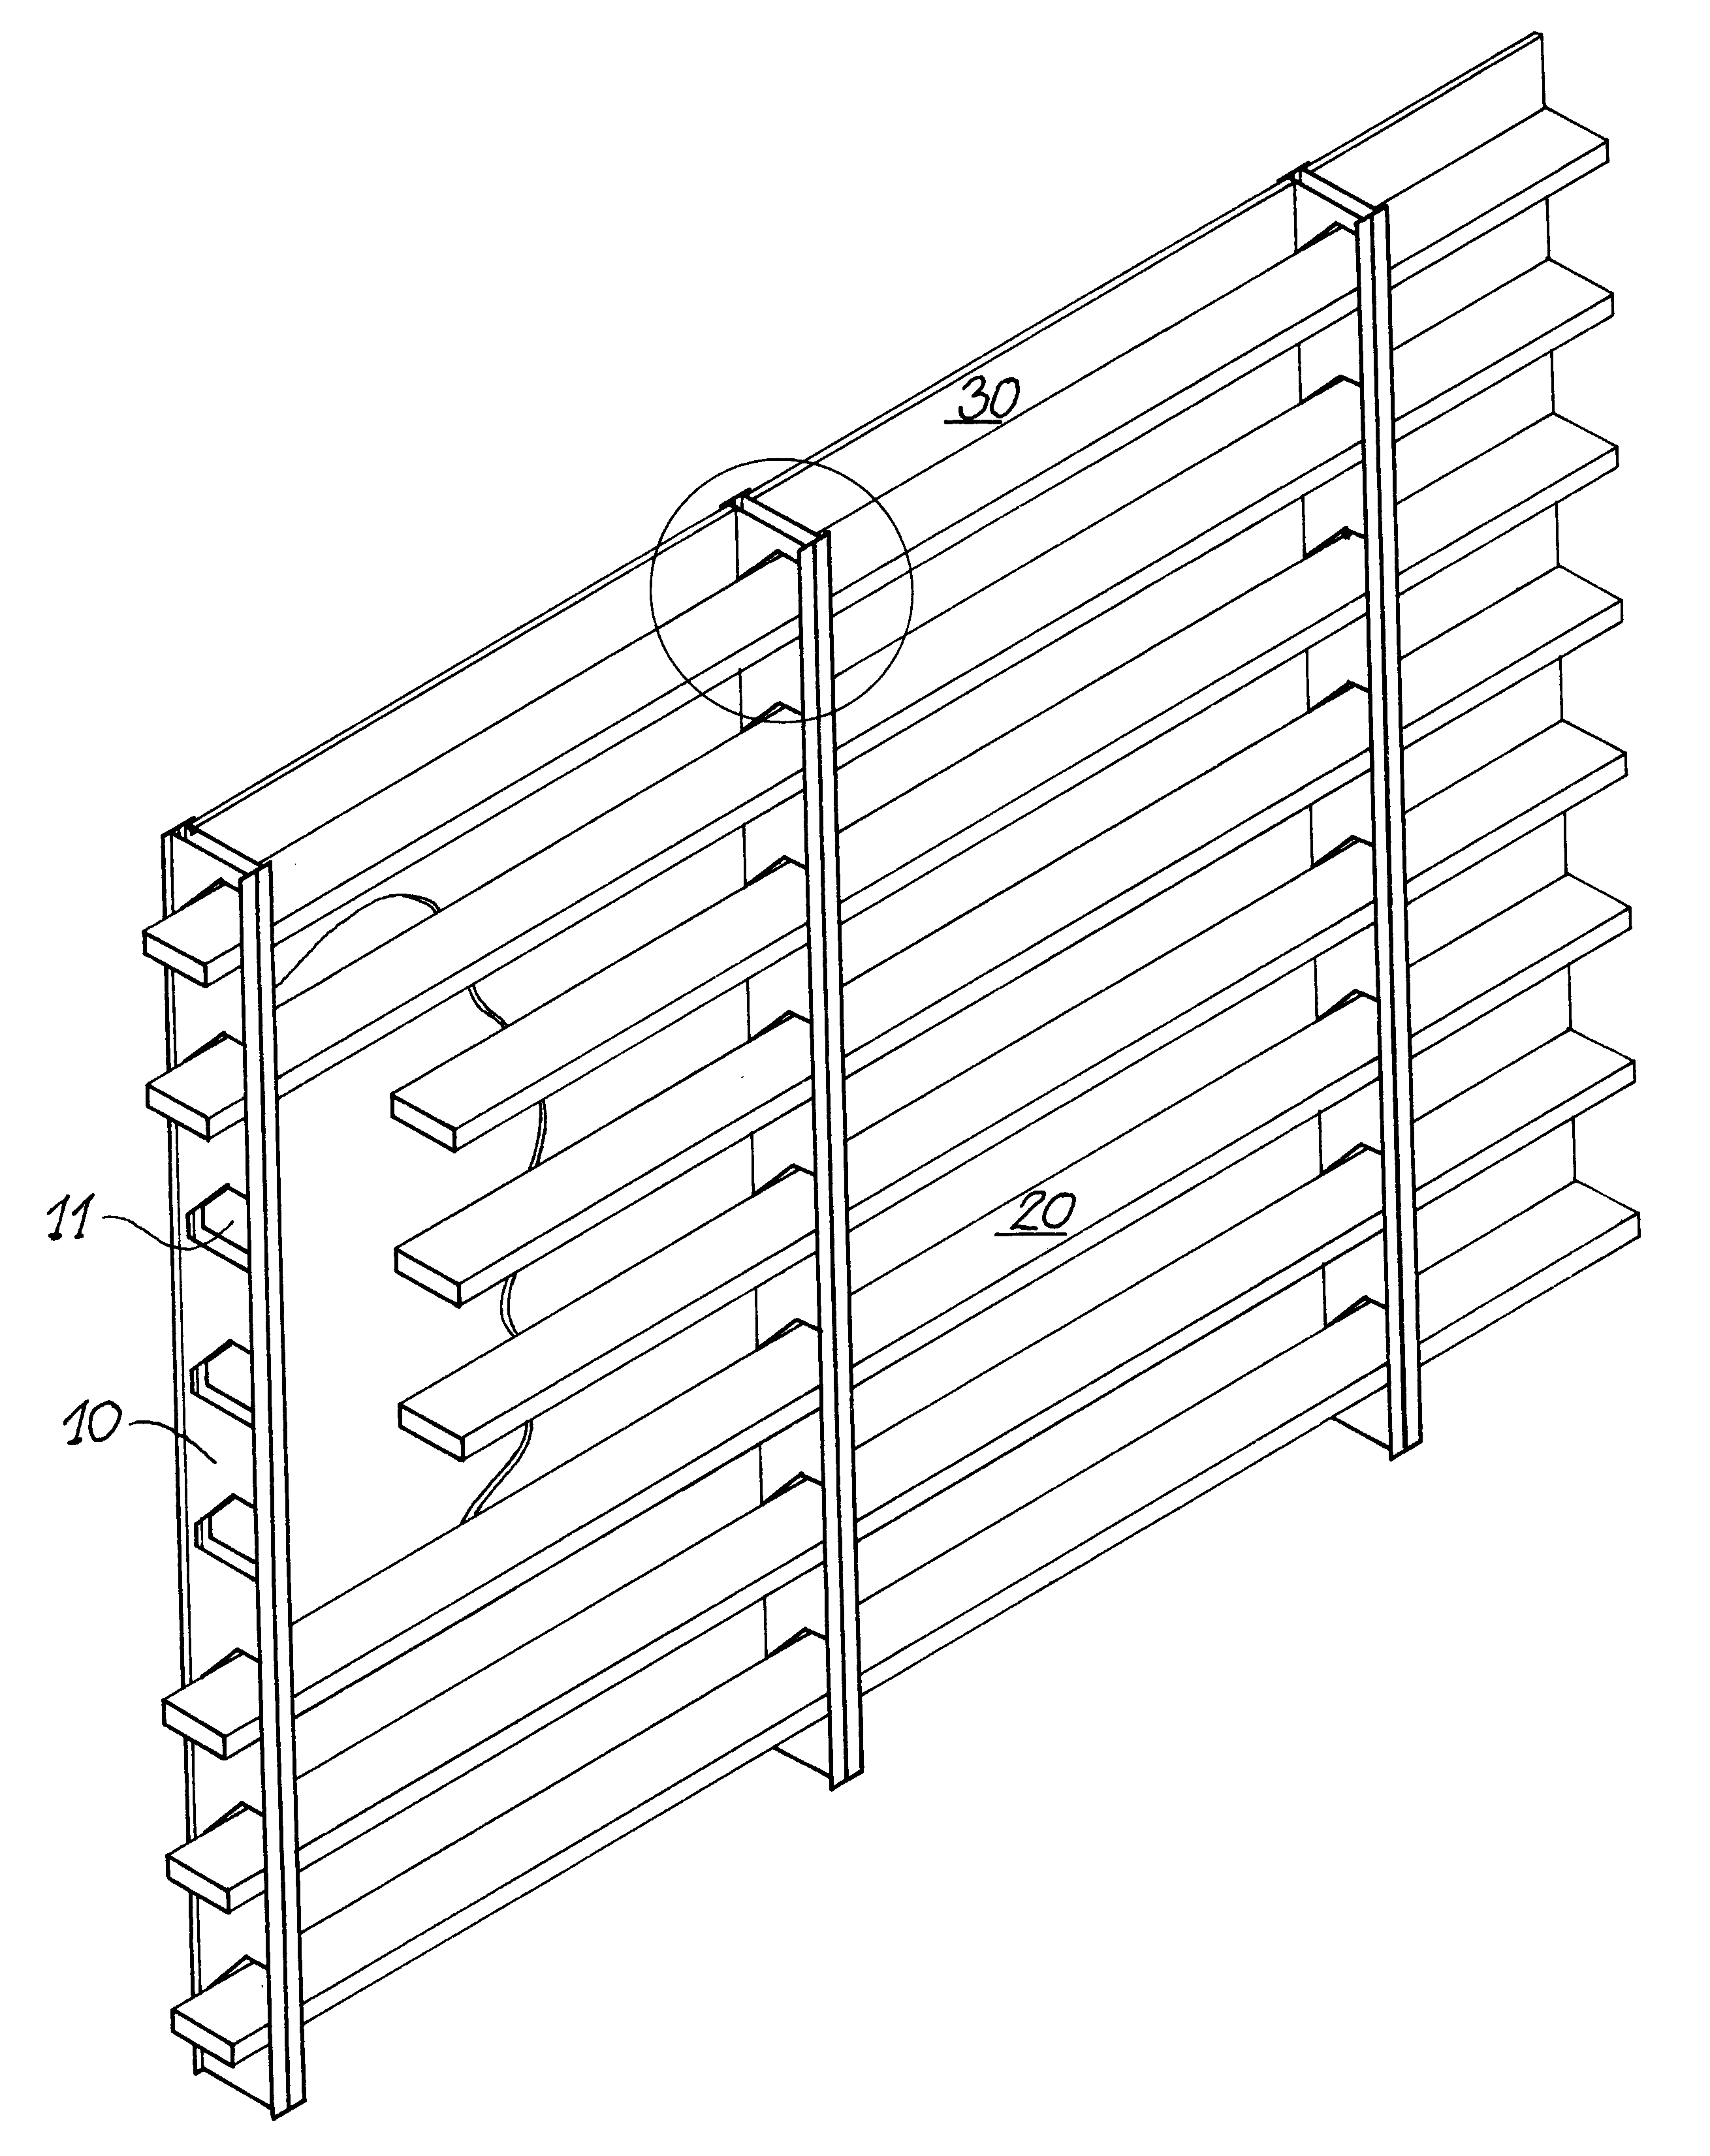 Sub-rigid fast-form barrier system